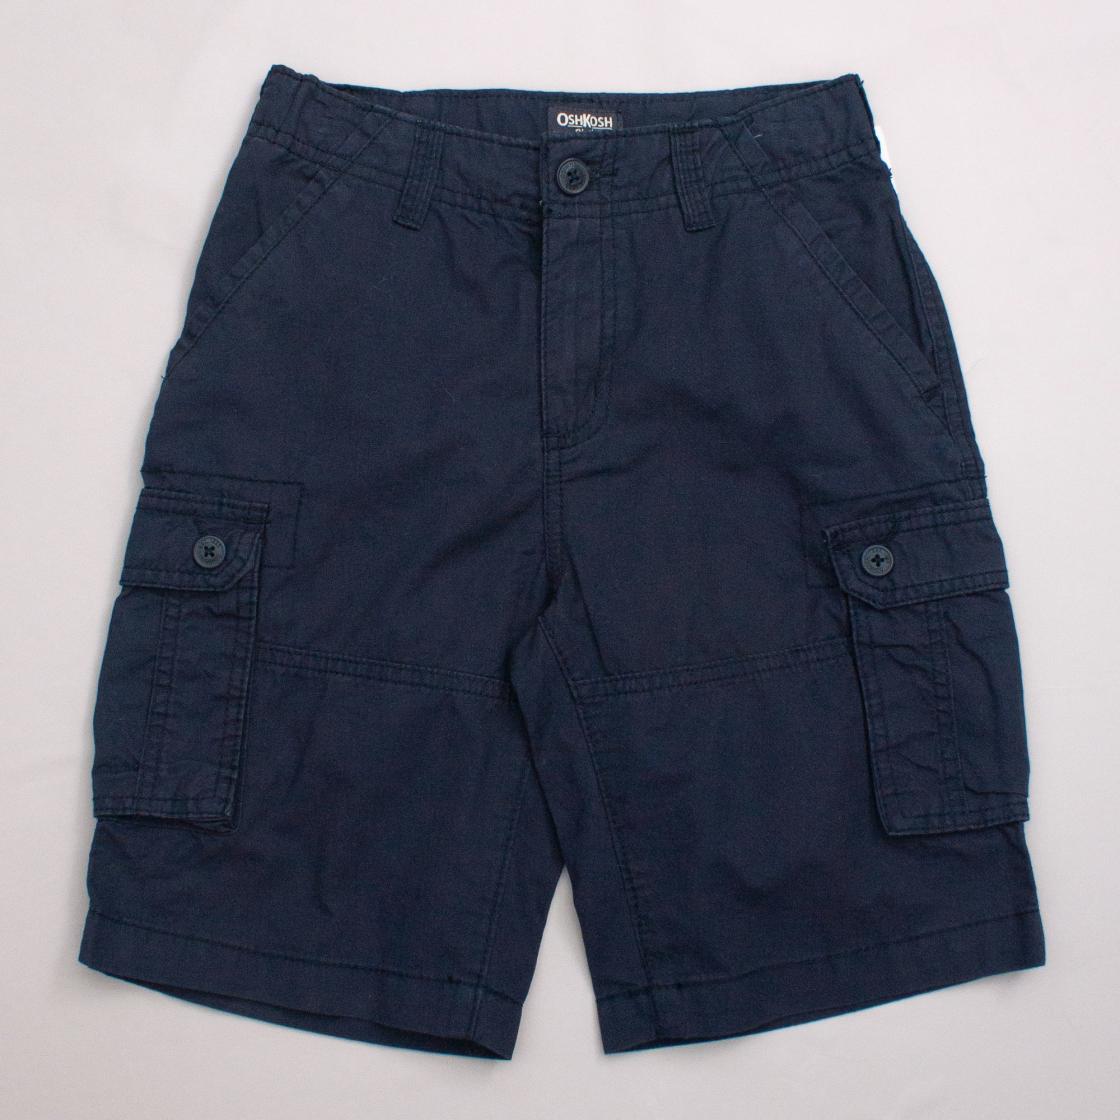 OshKosh Navy Blue Cargo Shorts "Brand New"